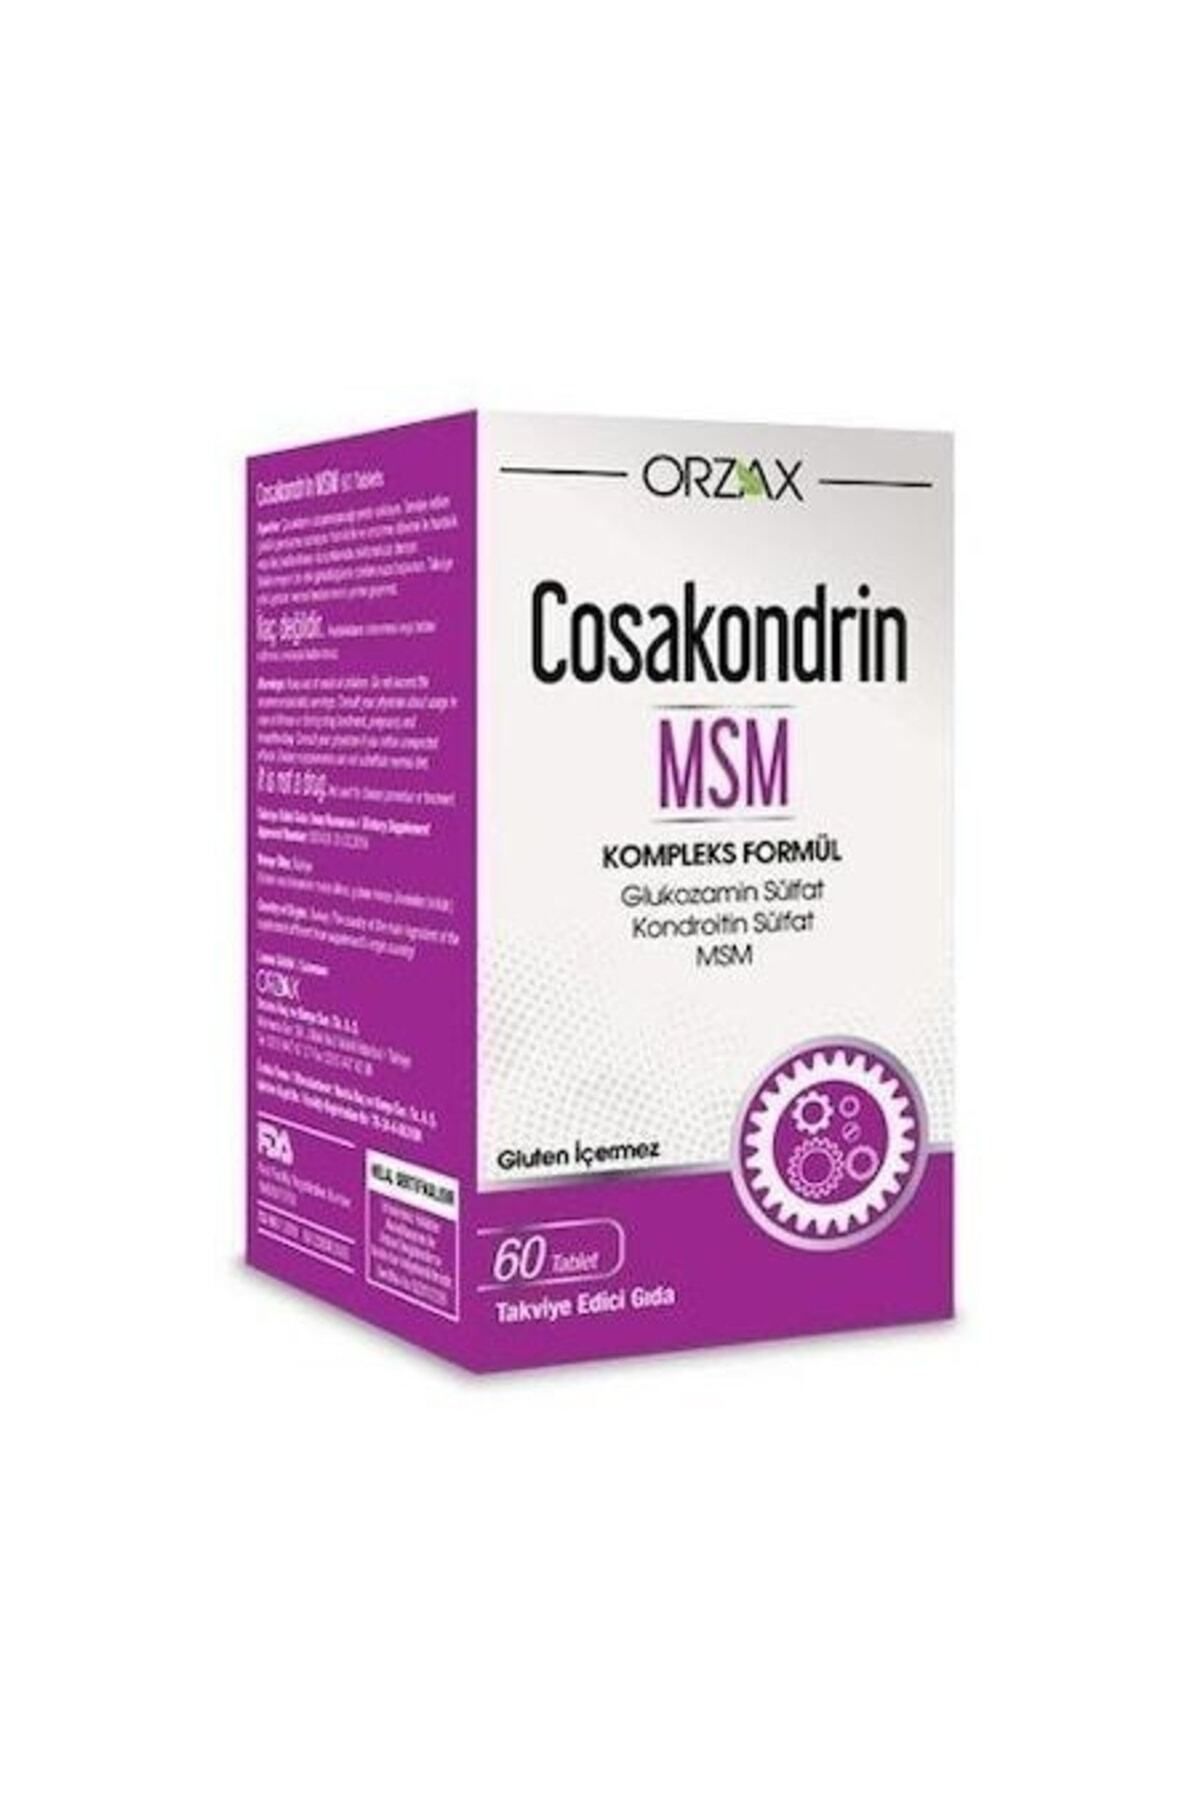 Cosakondrin Orzax Msm 60 Tablet